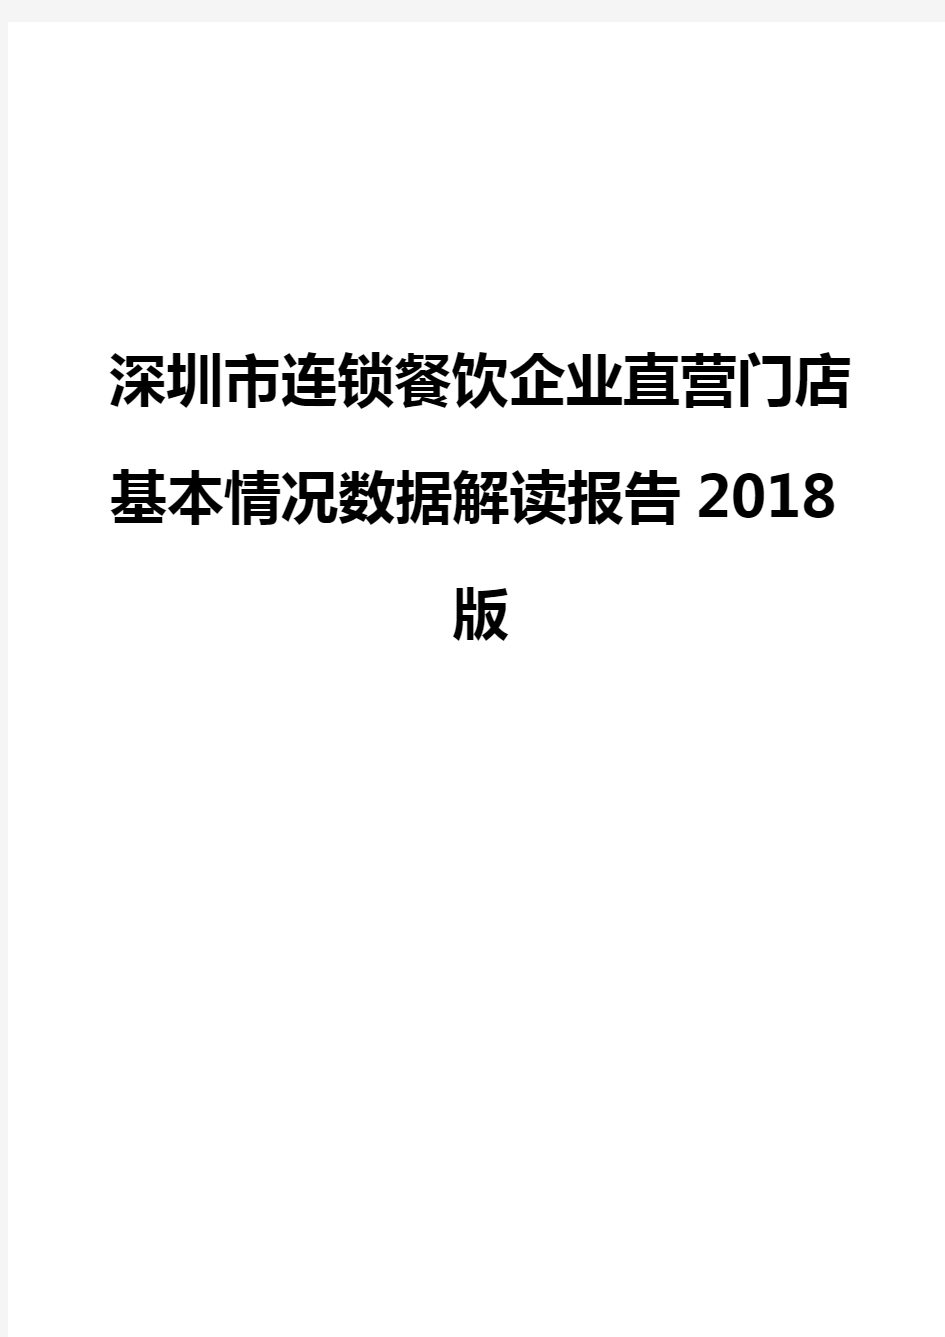 深圳市连锁餐饮企业直营门店基本情况数据解读报告2018版